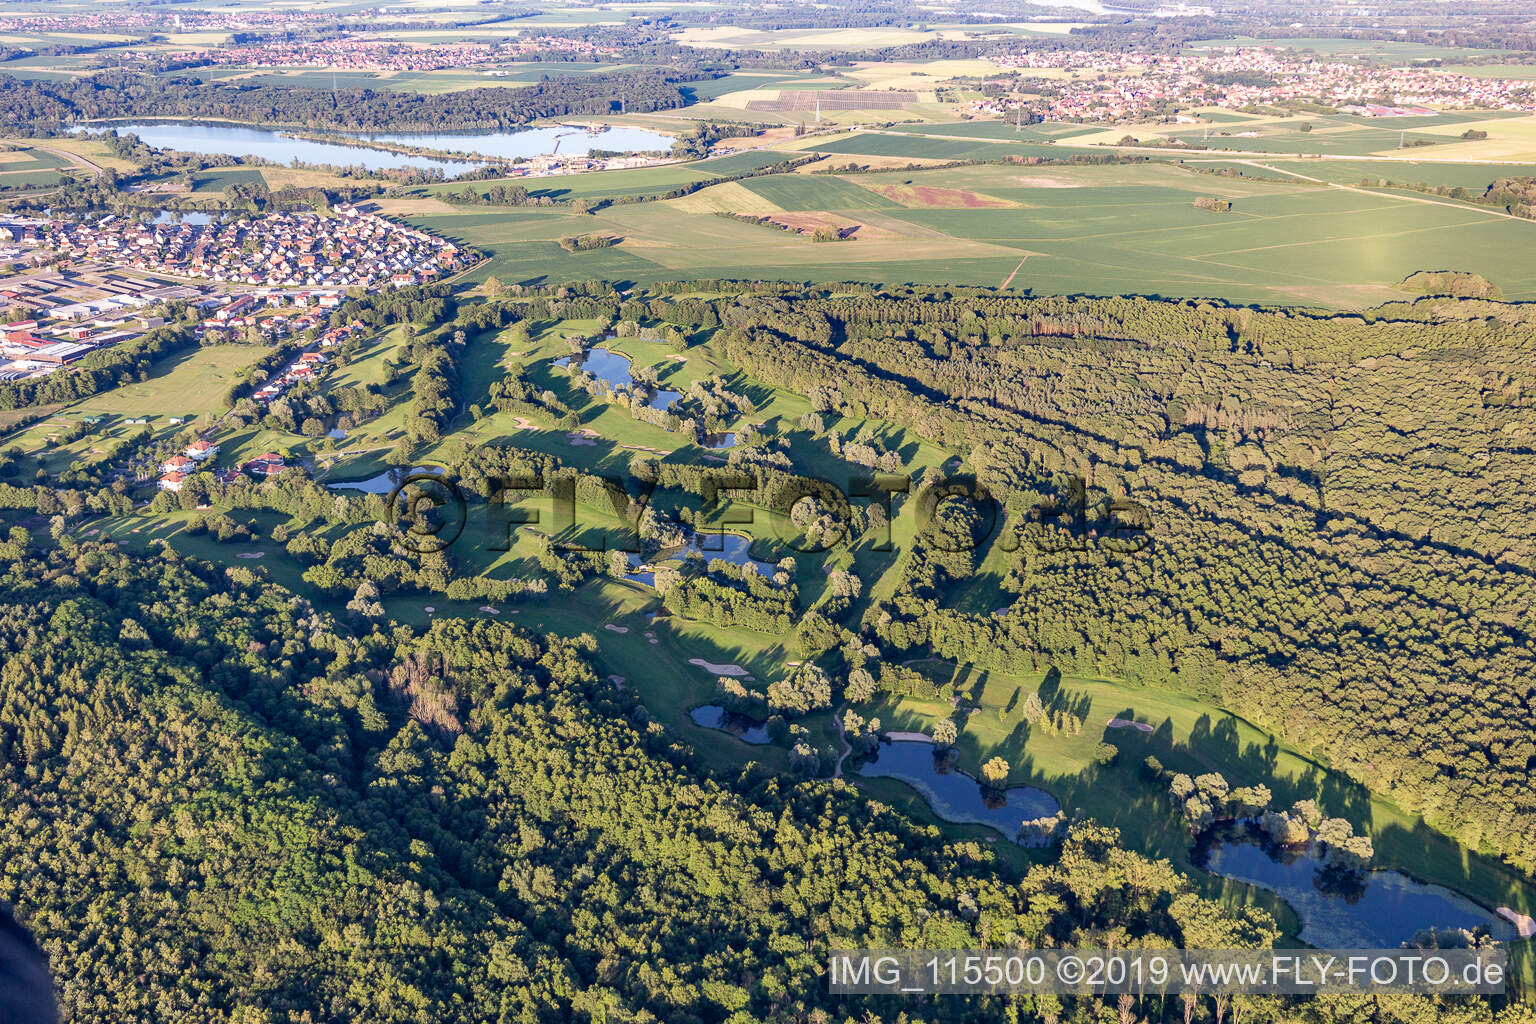 Vue aérienne de Golf de Baden Baden à Soufflenheim dans le département Bas Rhin, France